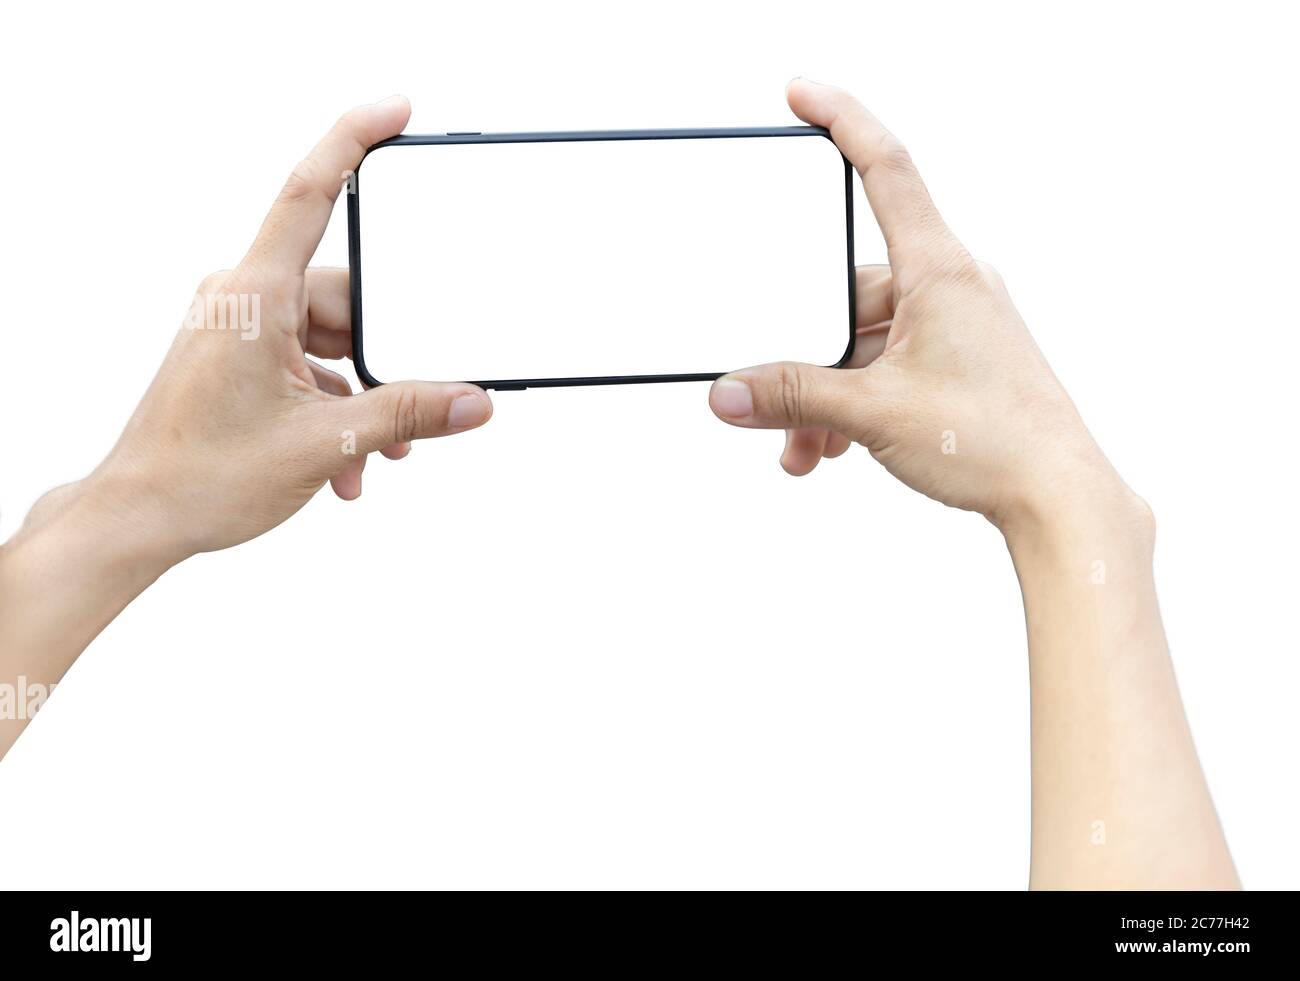 donne smartphone orizzontale con schermo vuoto per scattare una foto. isolato su sfondo bianco. Salva con tracciato di ritaglio Foto Stock